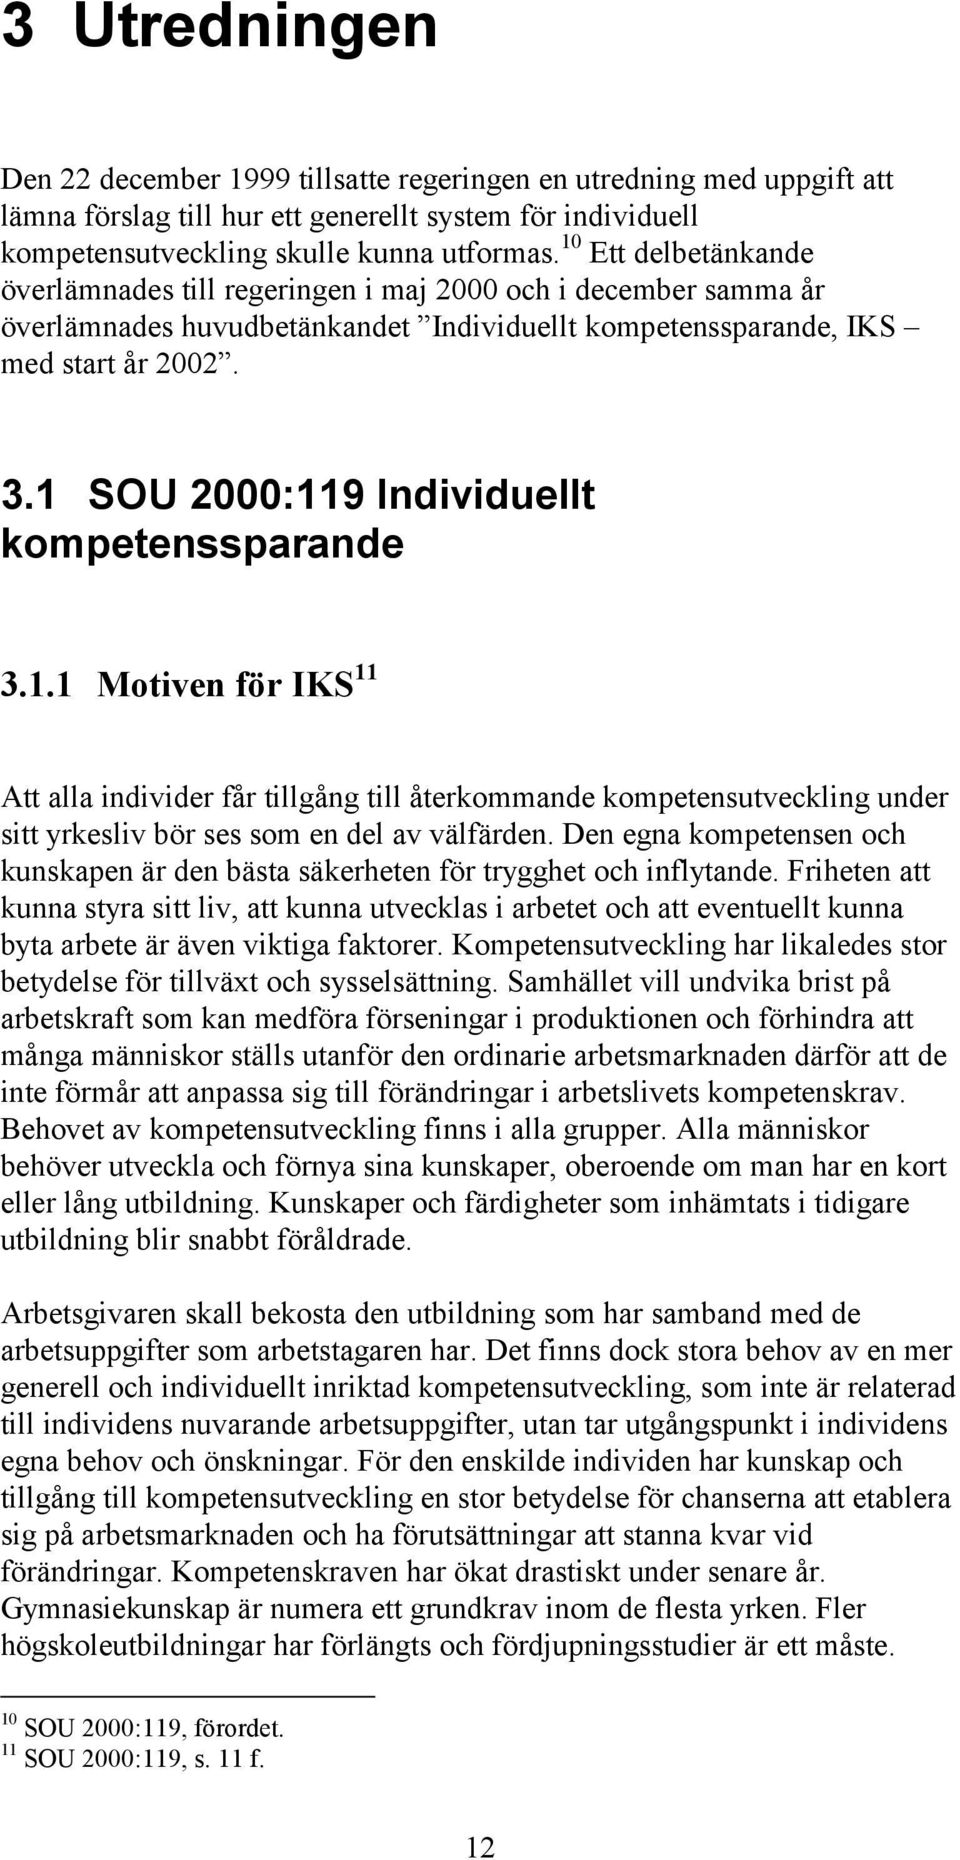 1 SOU 2000:119 Individuellt kompetenssparande 3.1.1 Motiven för IKS 11 Att alla individer får tillgång till återkommande kompetensutveckling under sitt yrkesliv bör ses som en del av välfärden.